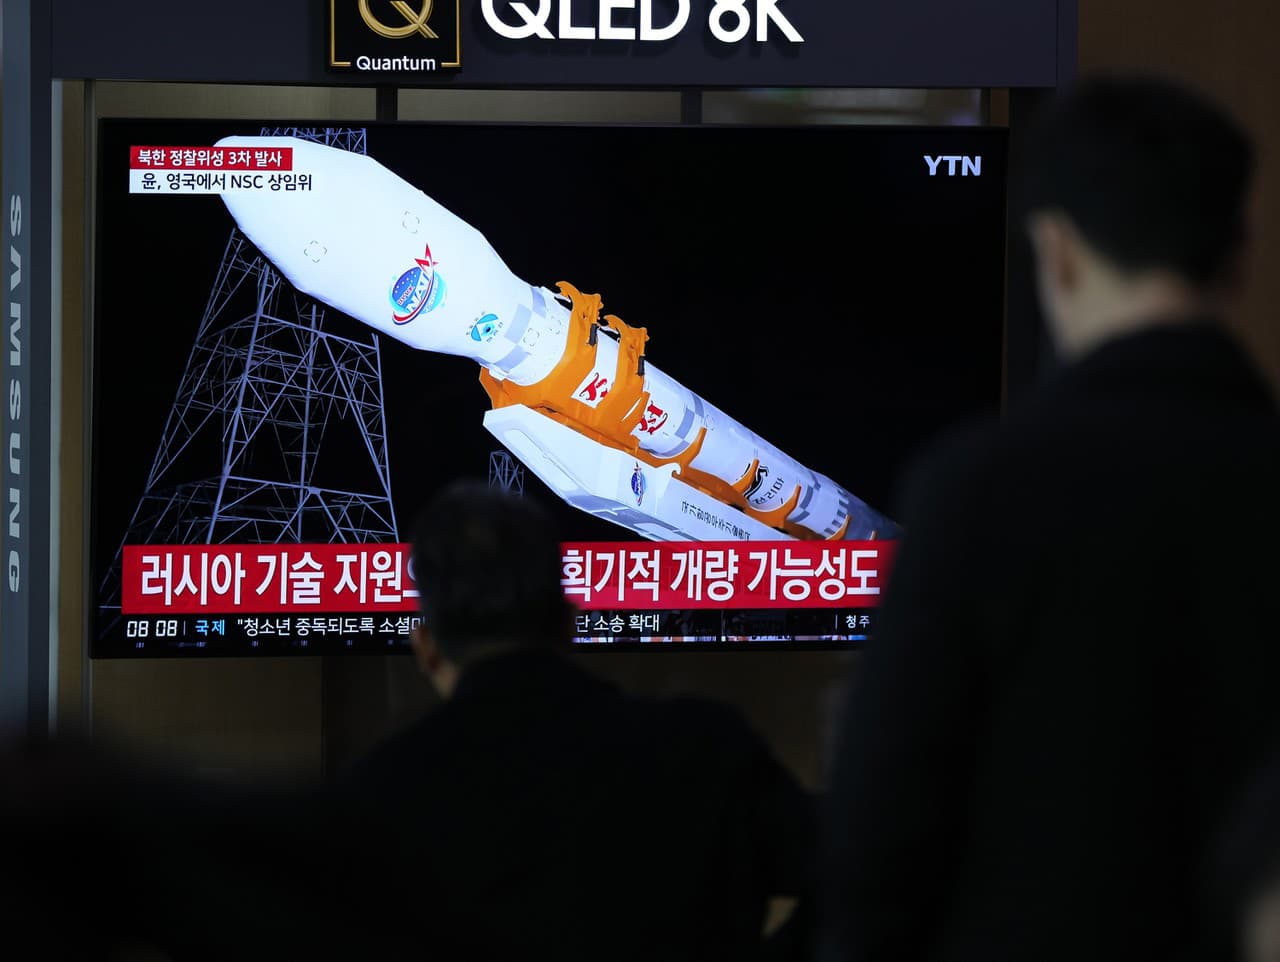 Na televíznej obrazovke sa zobrazuje správa o tom, že Severná Kórea vypustila špionážny satelit na obežnú dráhu pri svojom treťom pokuse o vypustenie v tomto roku počas spravodajského programu na železničnej stanici v Soule v Južnej Kórei v stredu 22. nov